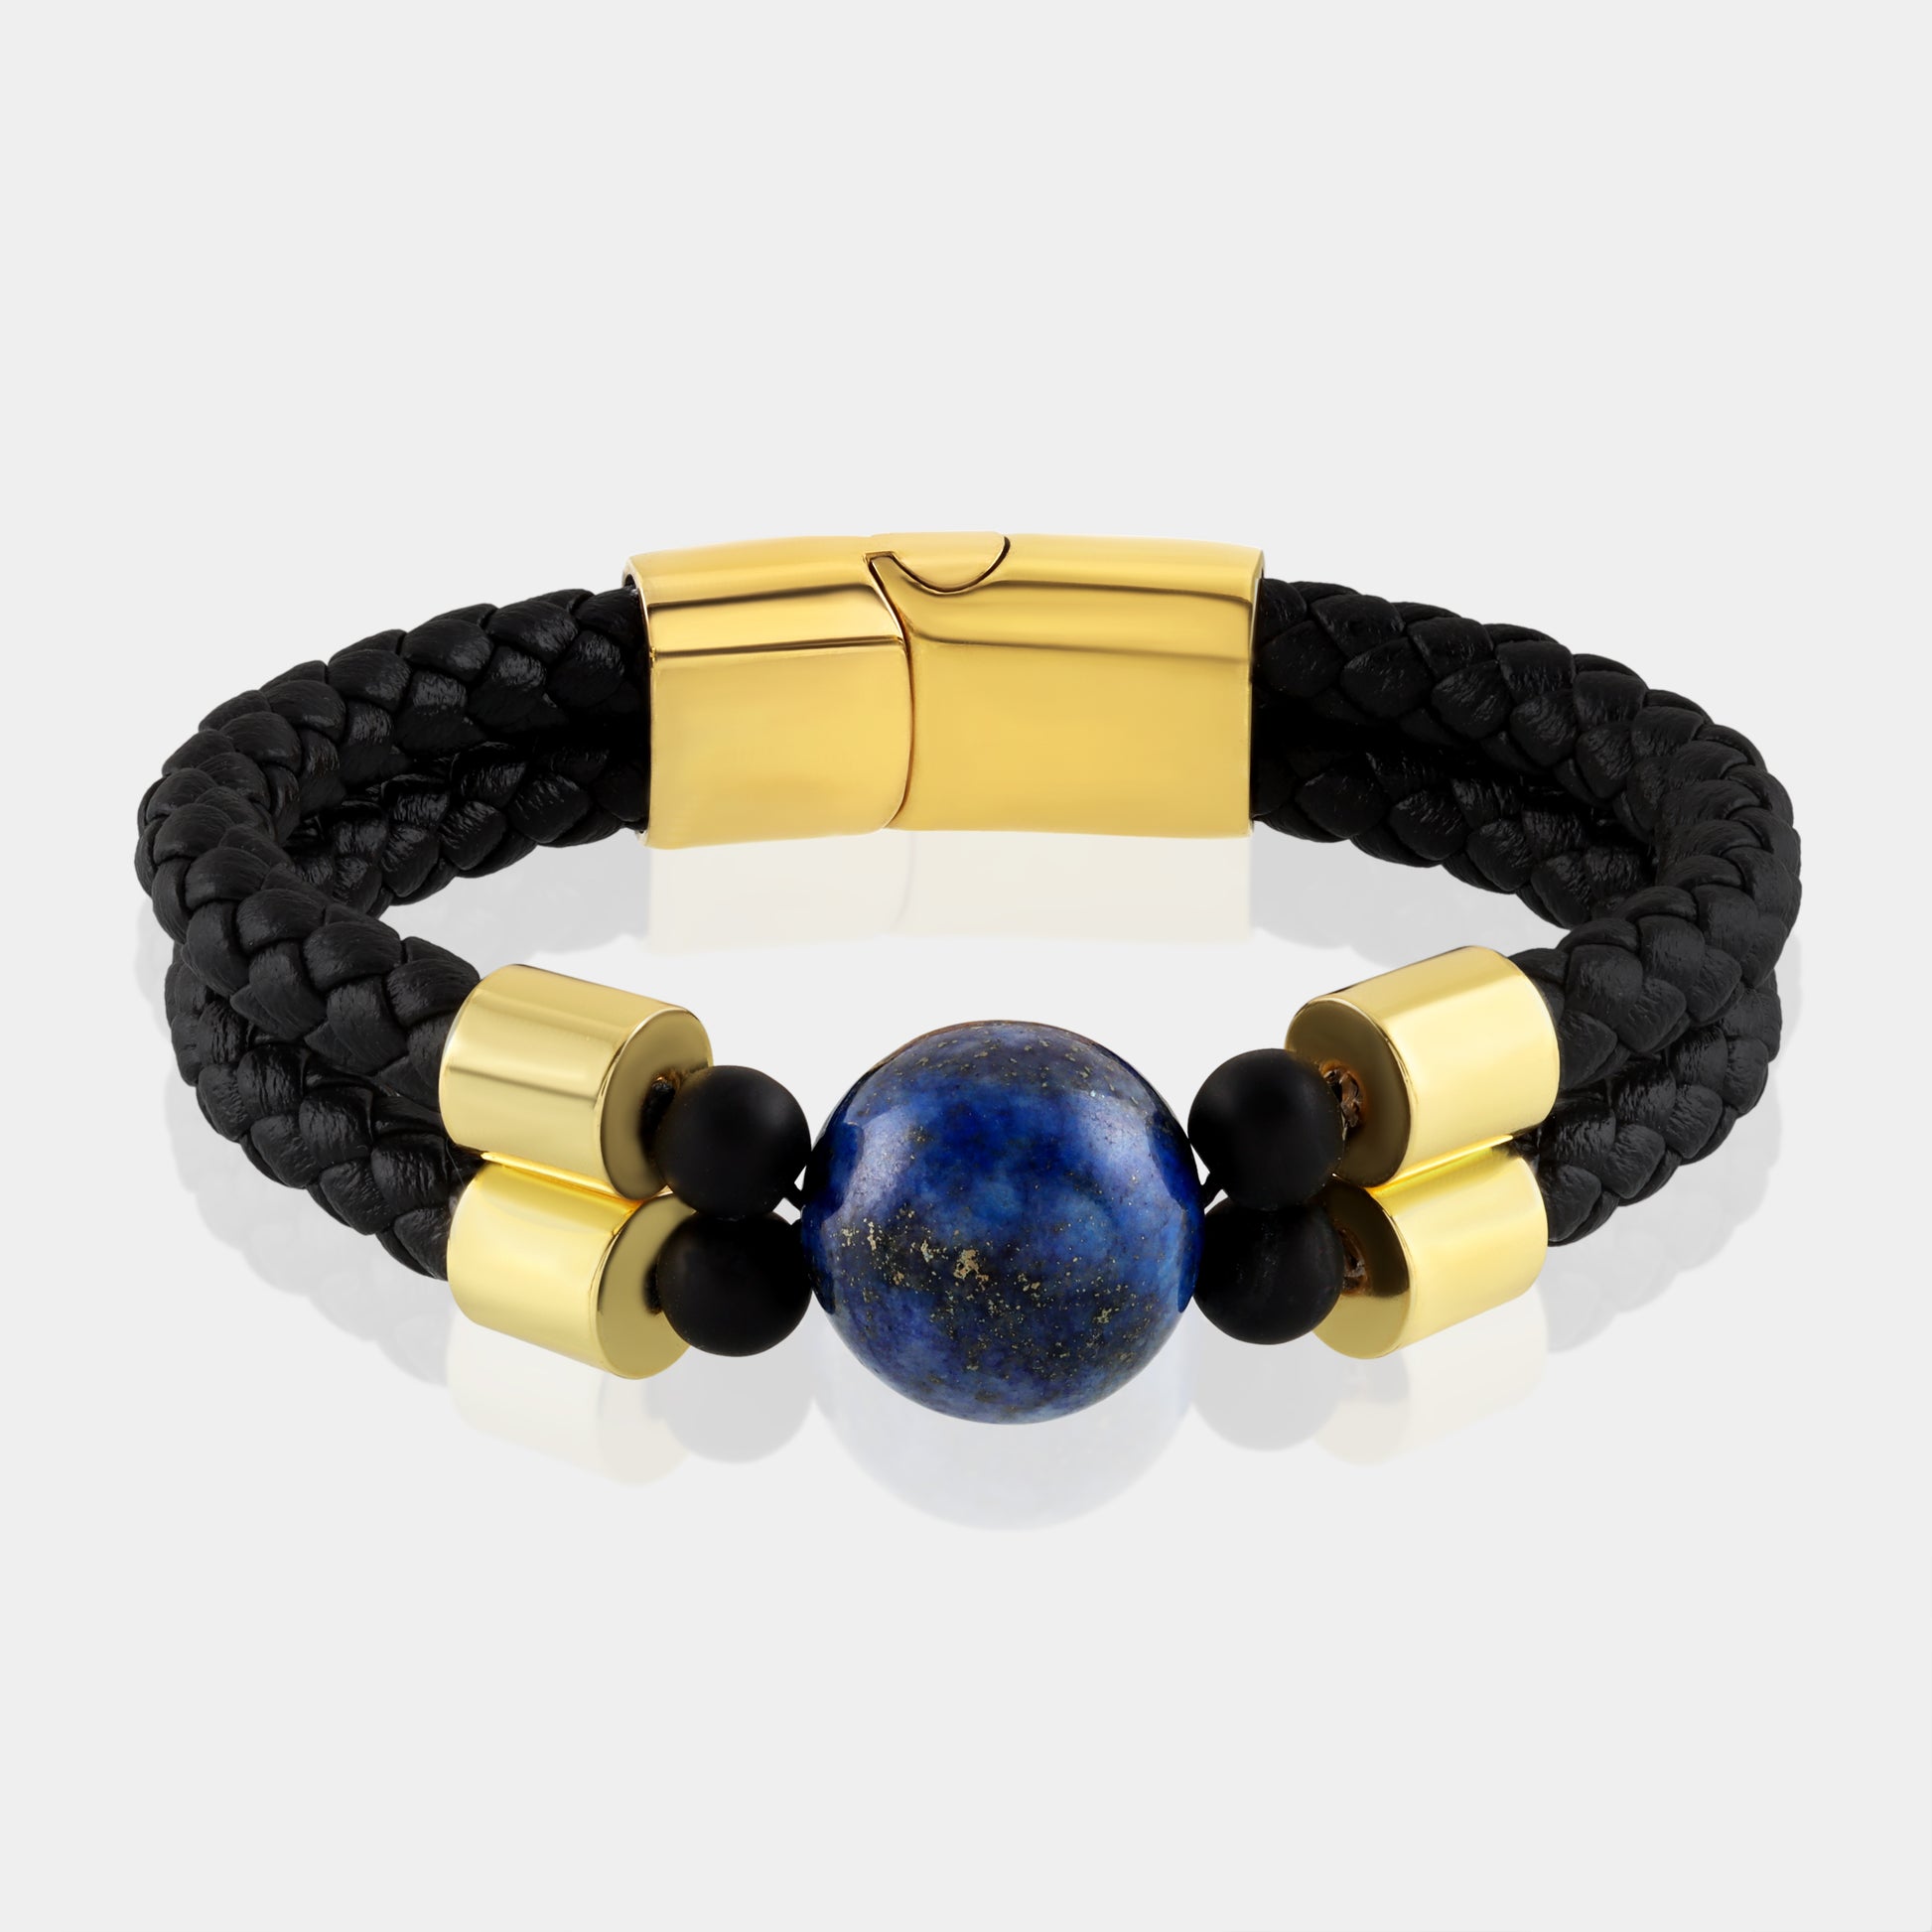 Opulent Blue Lapis Lazuli Bracelet with Luxurious Gold Accents